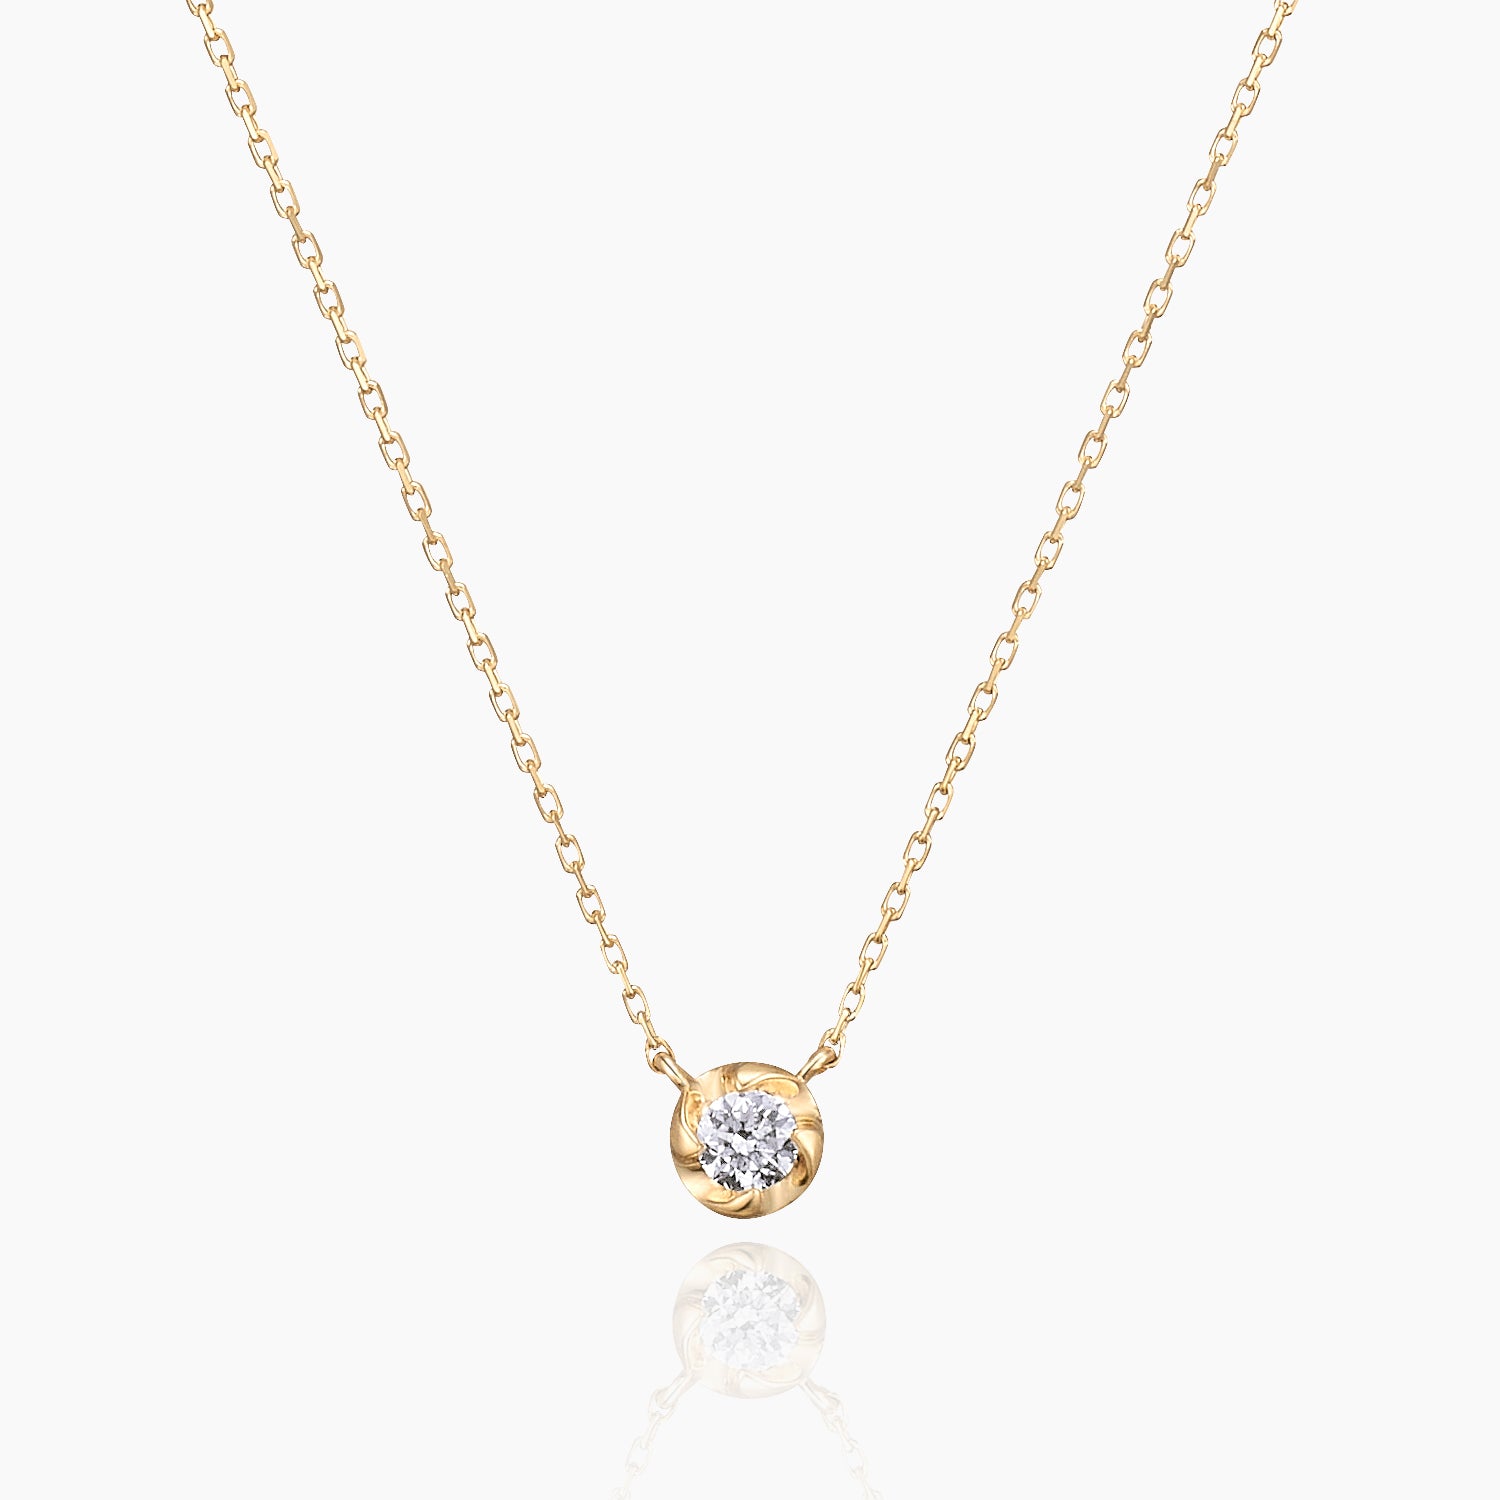 Barry バリー ネックレス 宝石は天然ダイヤモンド 0.05ct 素材はK10のイエローゴールド 商品番号MA35 正面